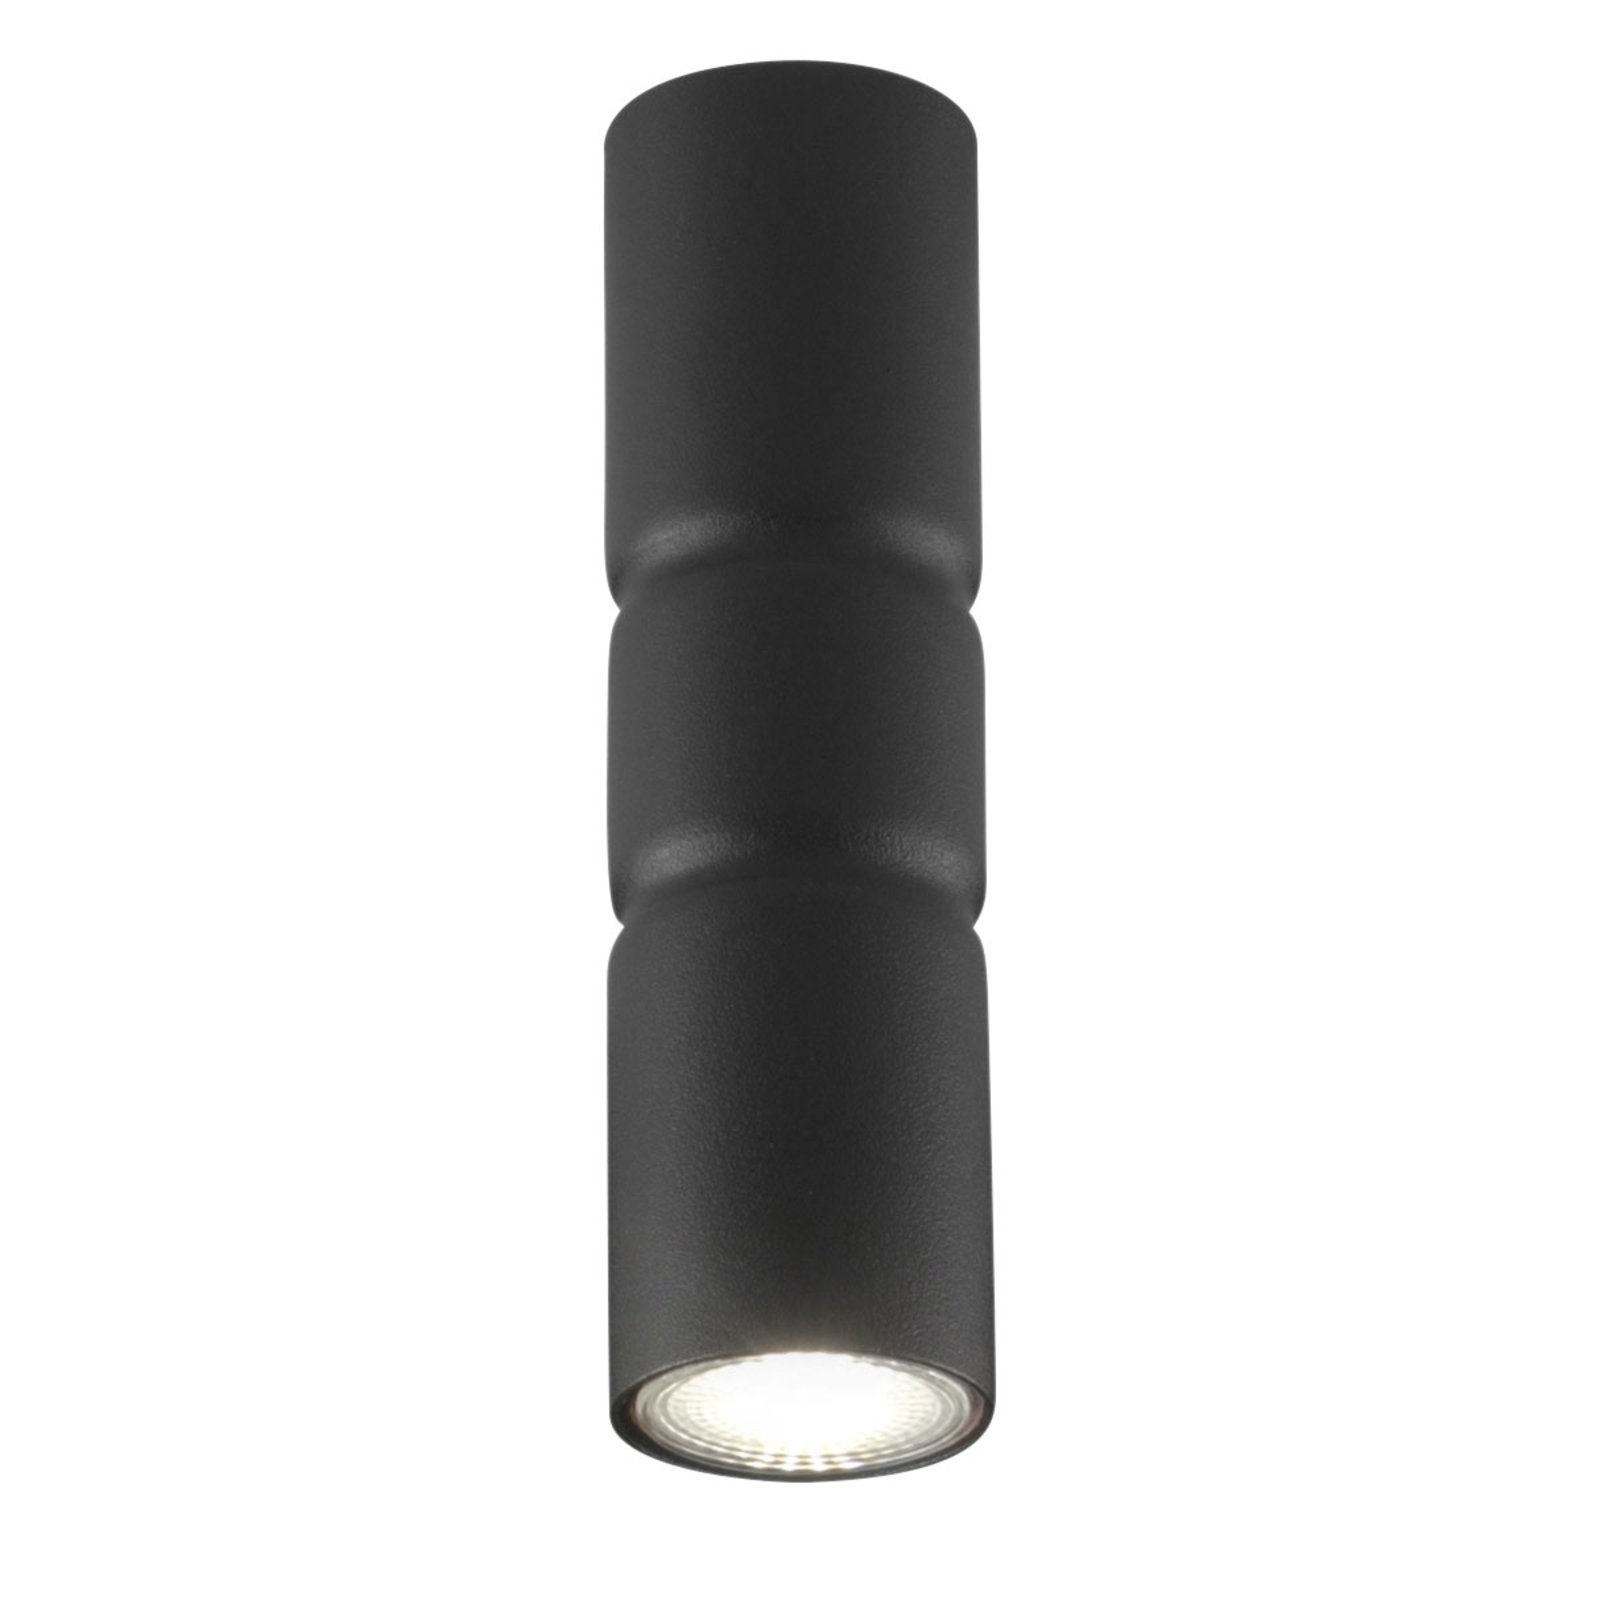 Turbo stropna svetilka za površinsko montažo, fiksna, črna